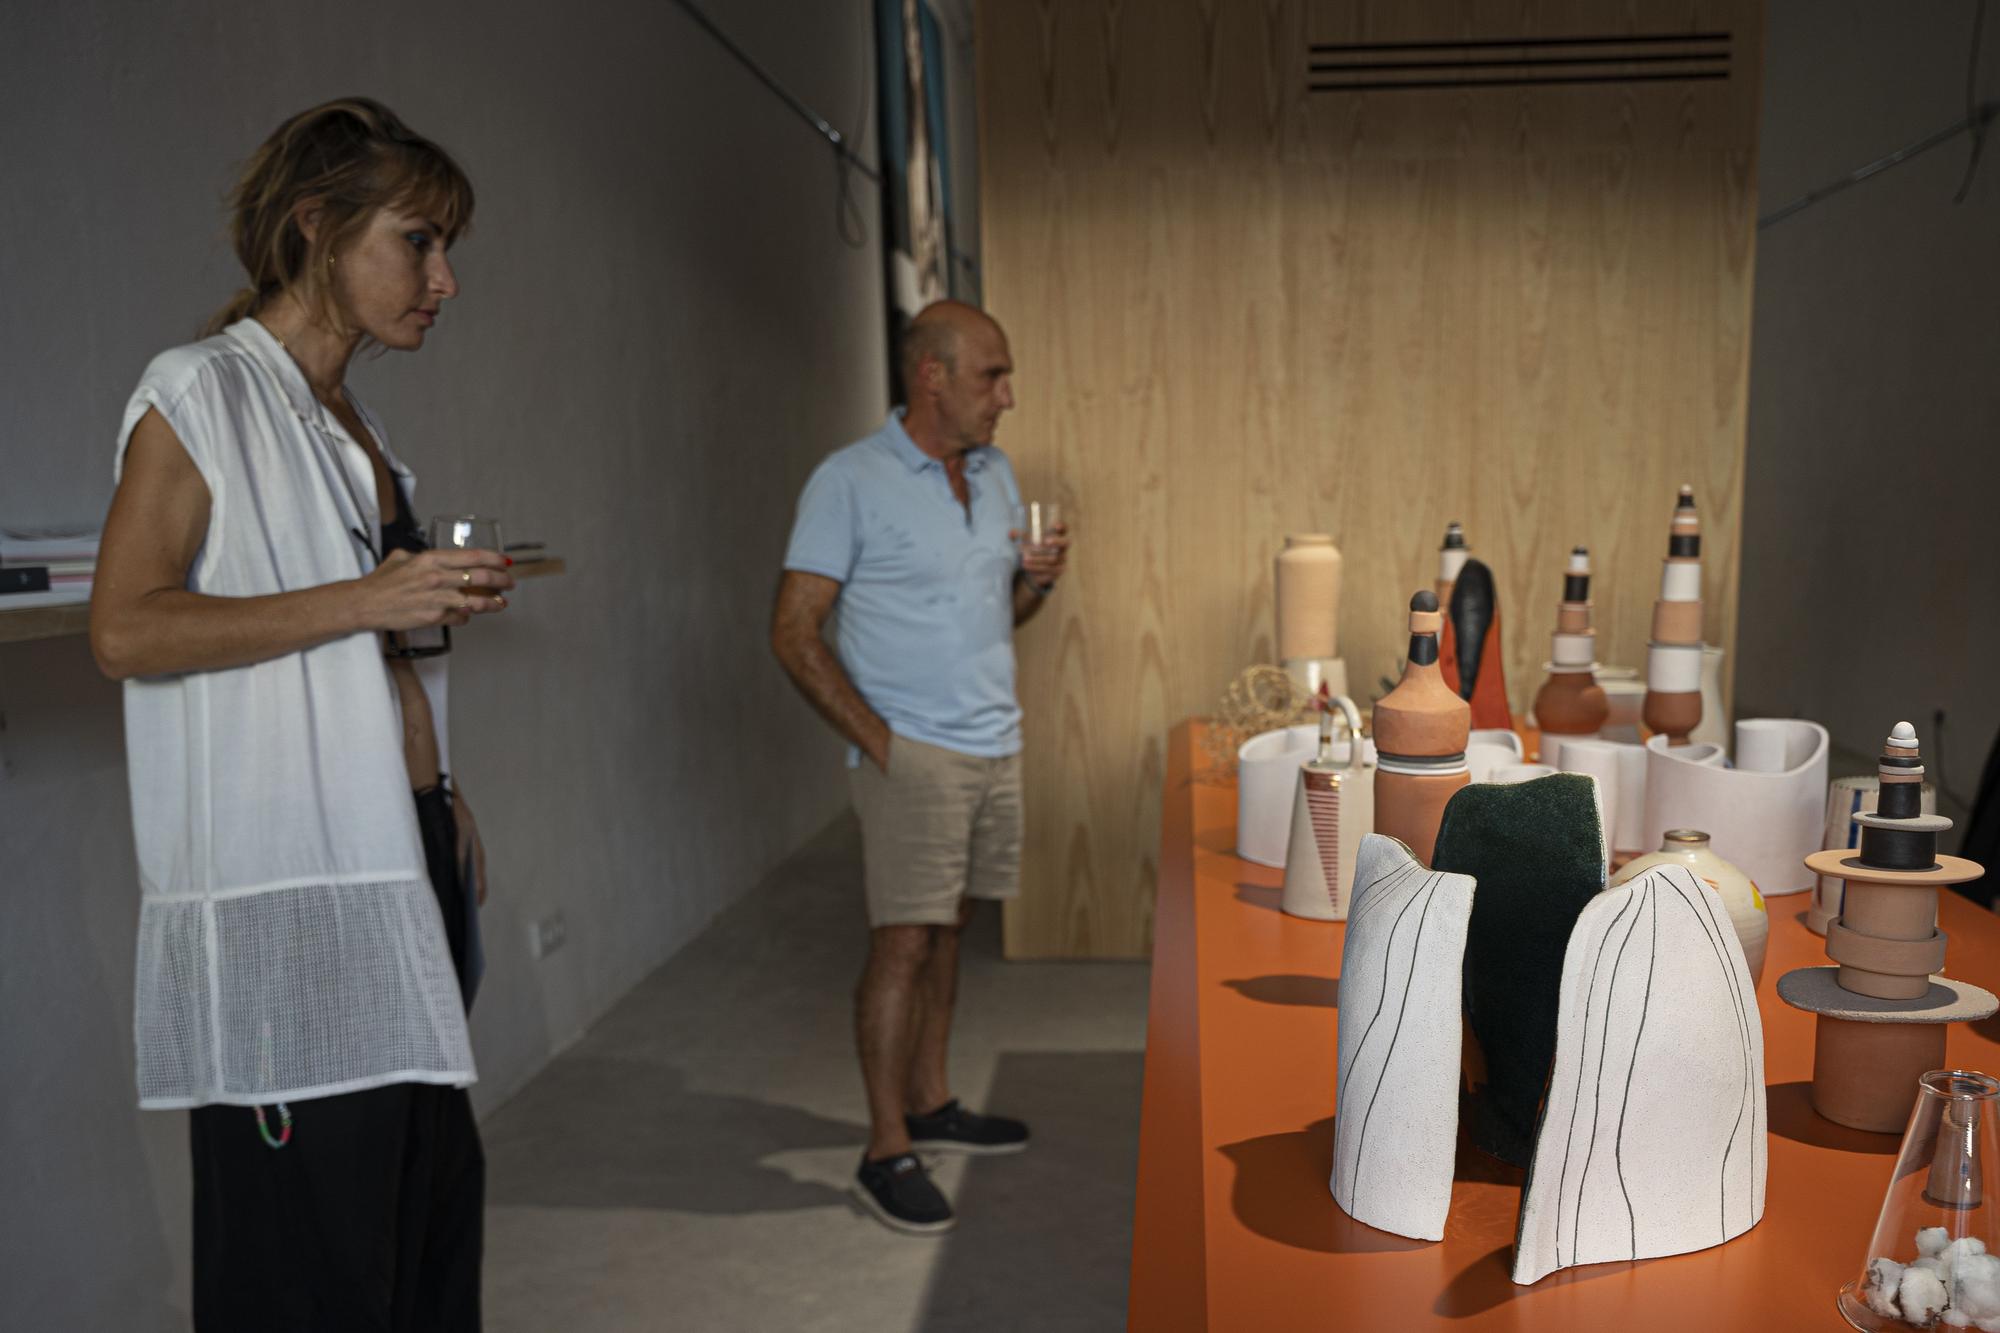 Ses Dotze Naus dedica ‘Taula-01’ a la cerámica de Ibiza